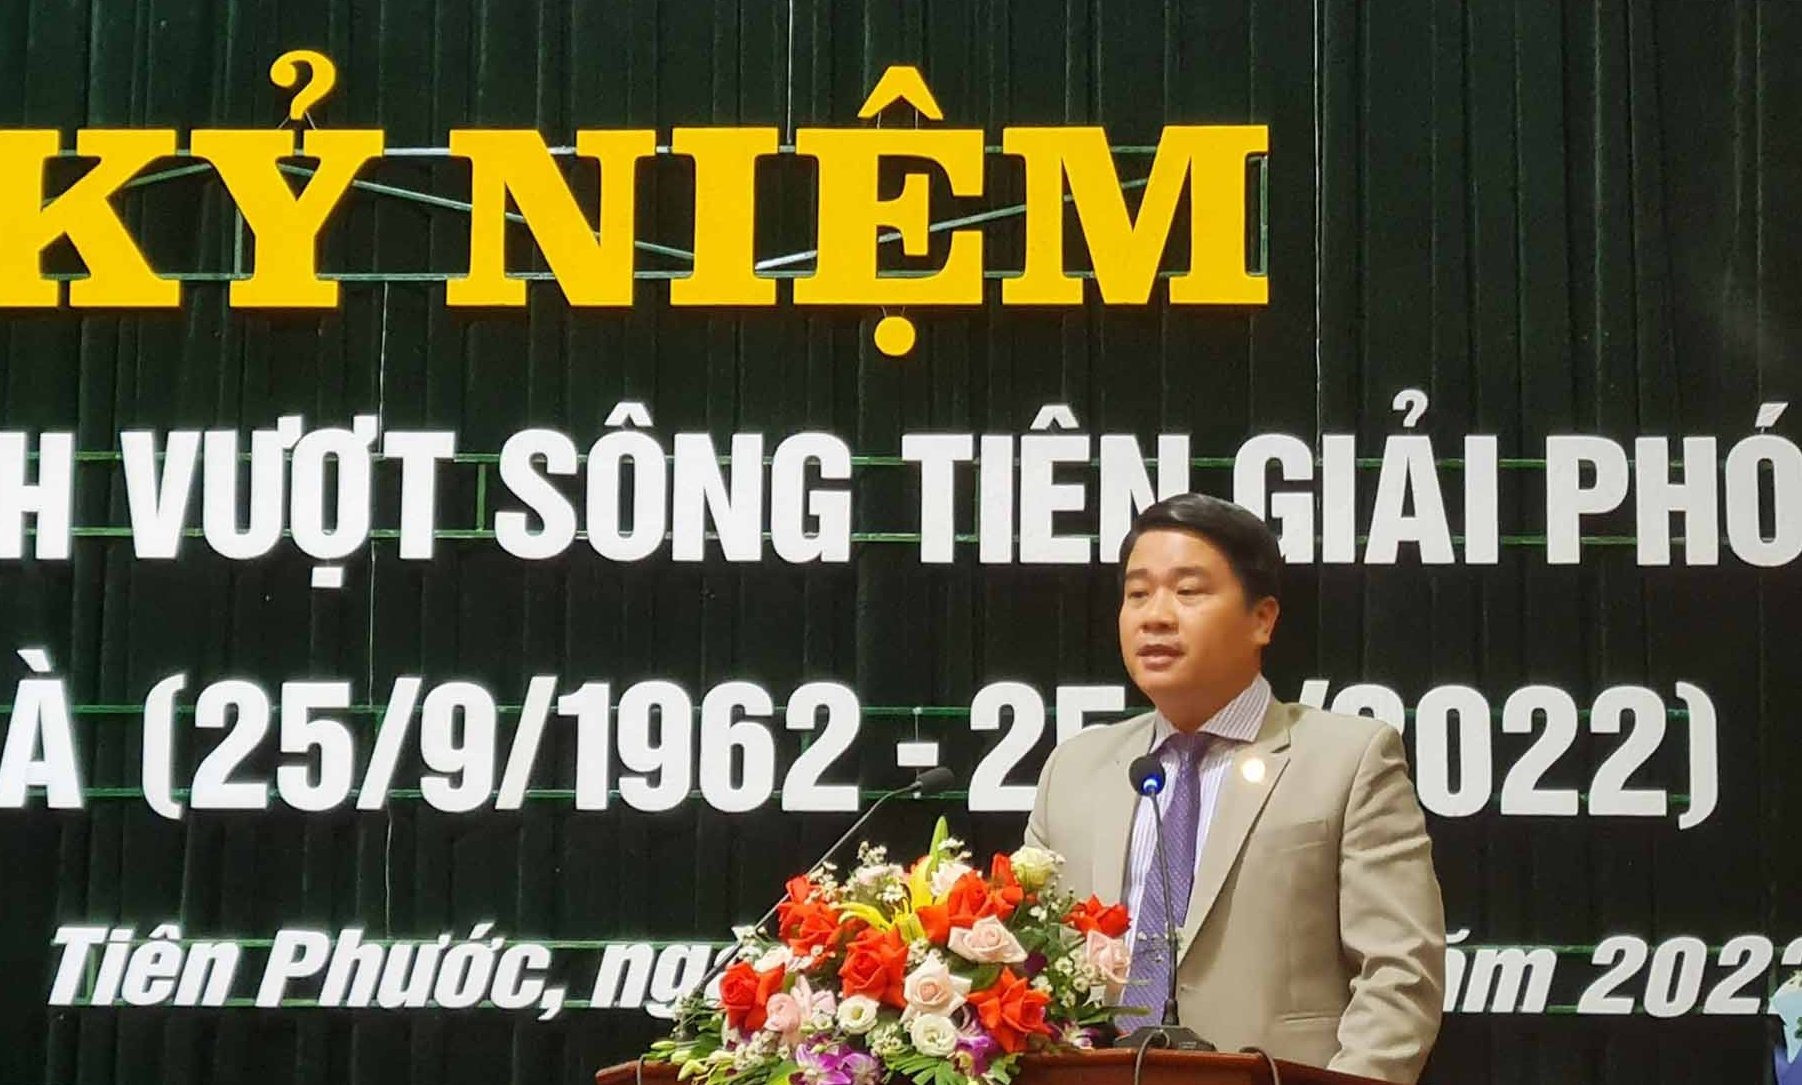 Phó Chủ tịch UBND tỉnh Trần Văn Tân phát biểu tại lễ kỷ niệm. Ảnh: D.L